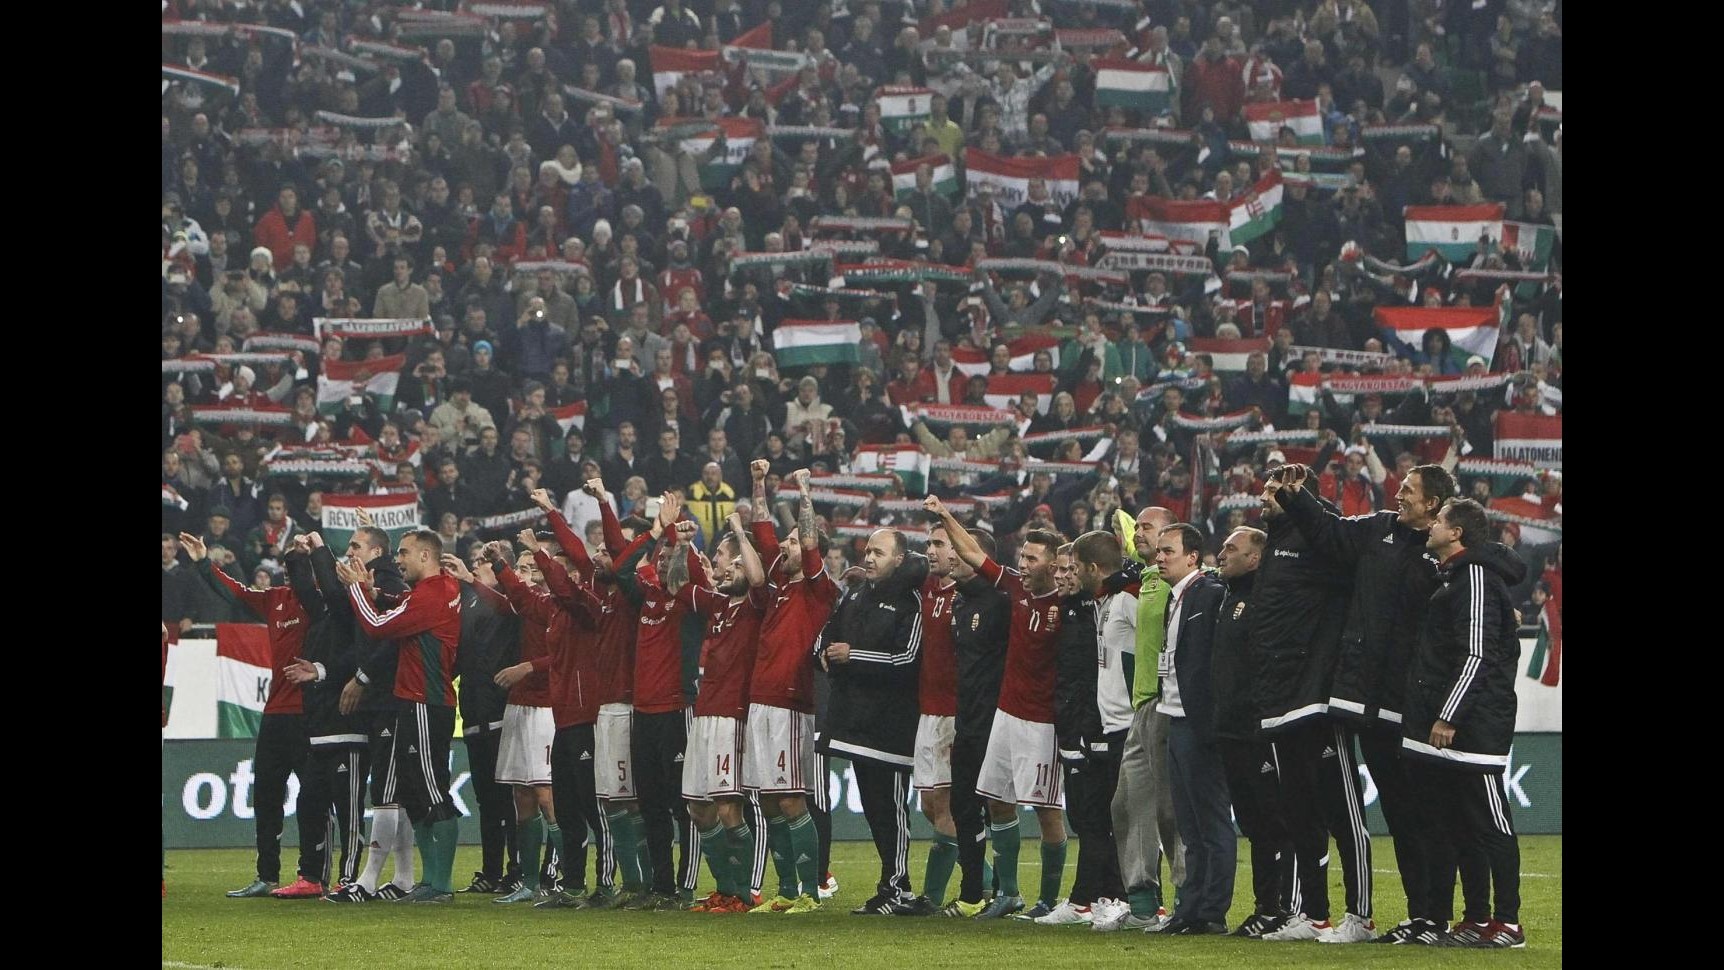 Playoff Euro 2016: Ungheria qualificata, 2-1 alla Norvegia